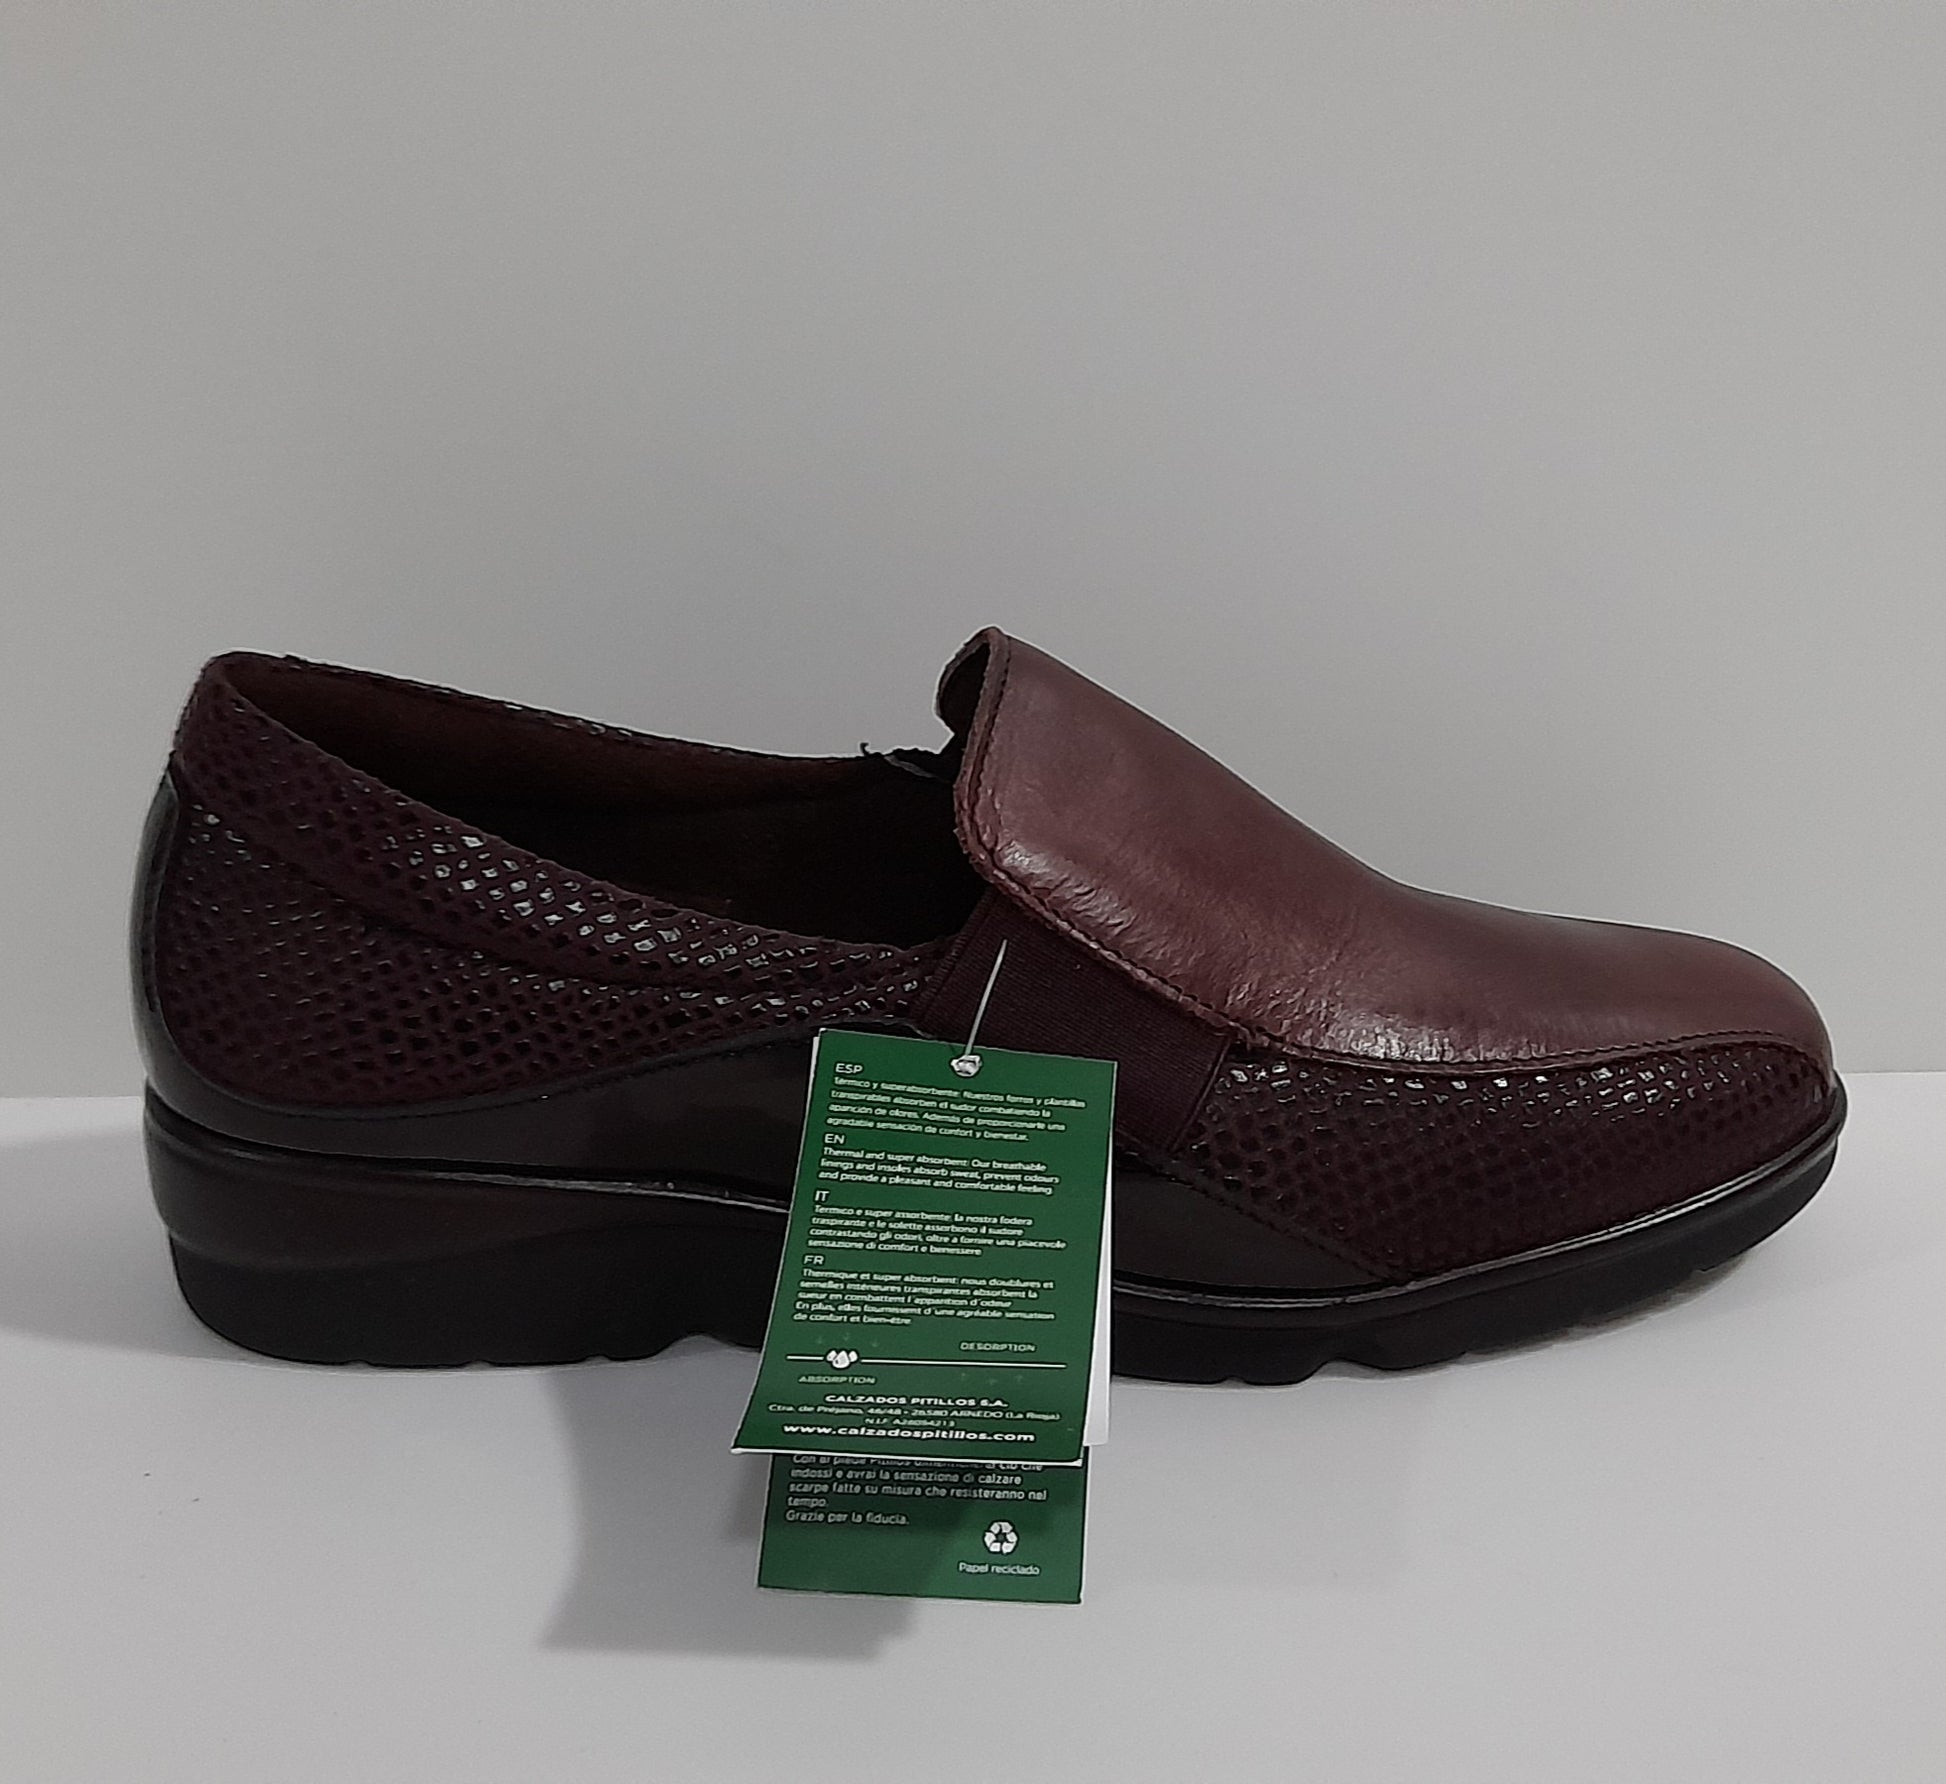 Zapatos PITILLOS 3502 – Calzados Vega